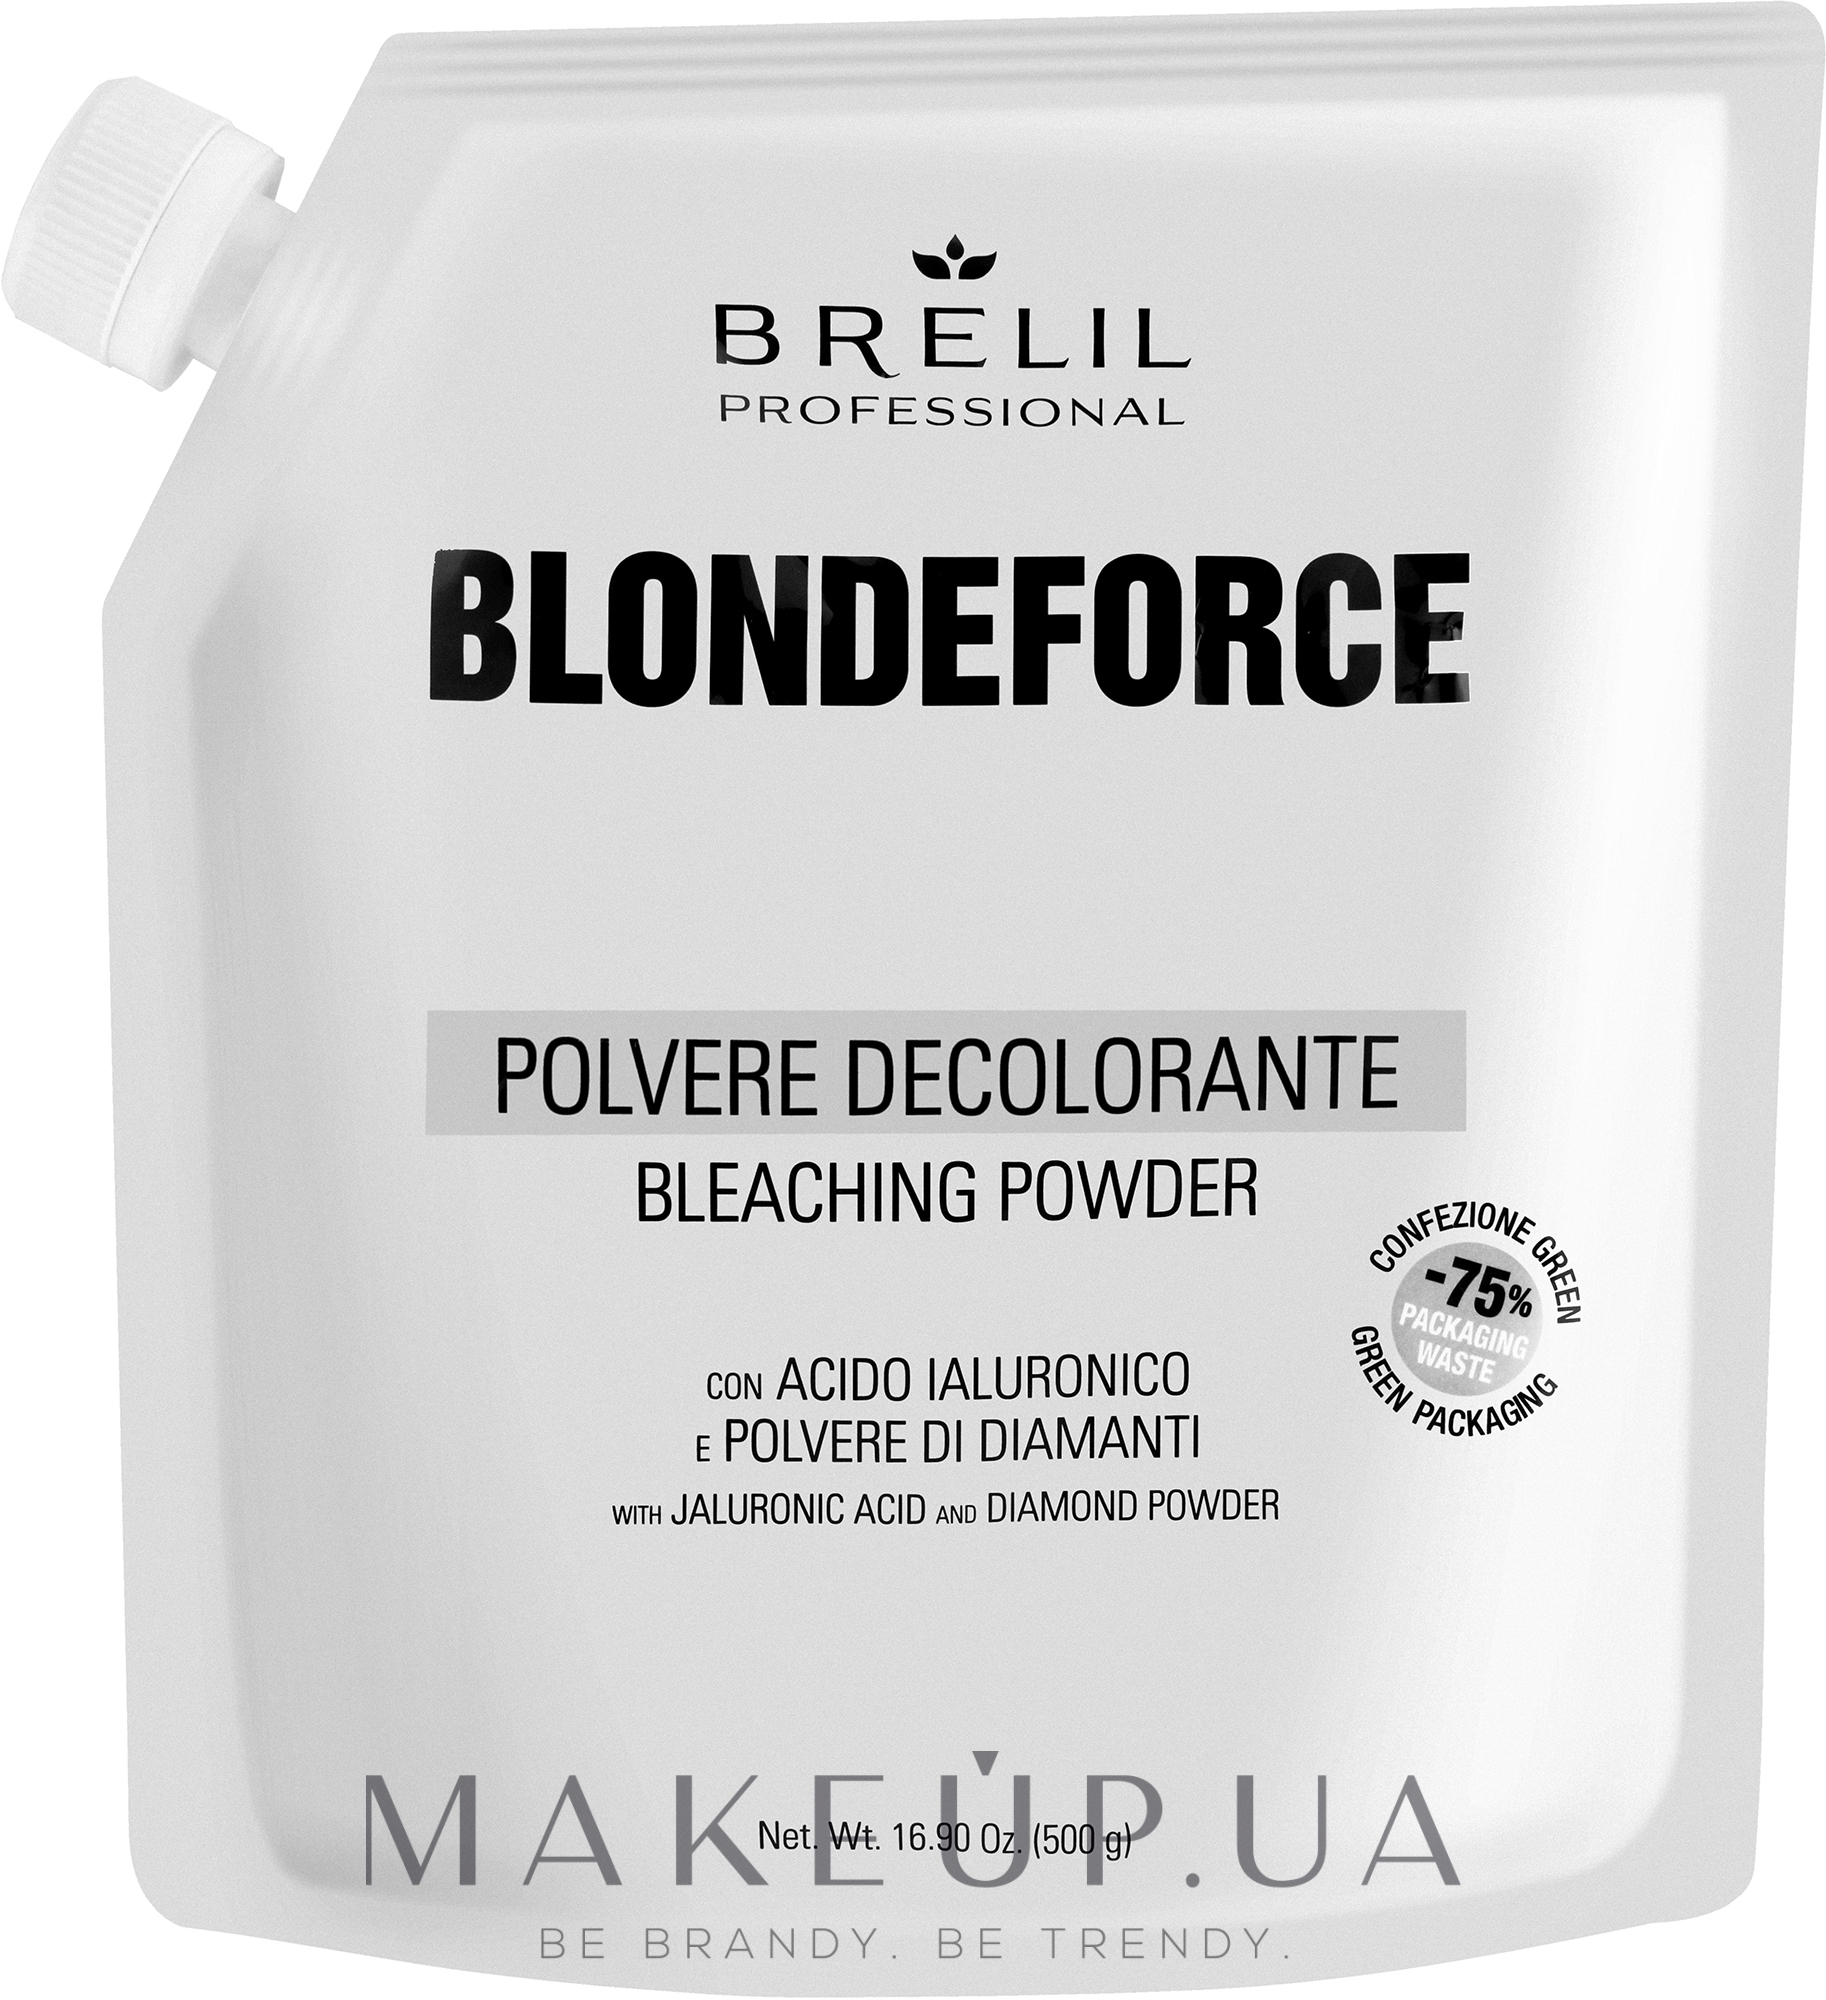 Освітлювальна пудра для волосся - Brelil Blondeforce BF1 Polvere Decolorante Bleaching Powder — фото 500g